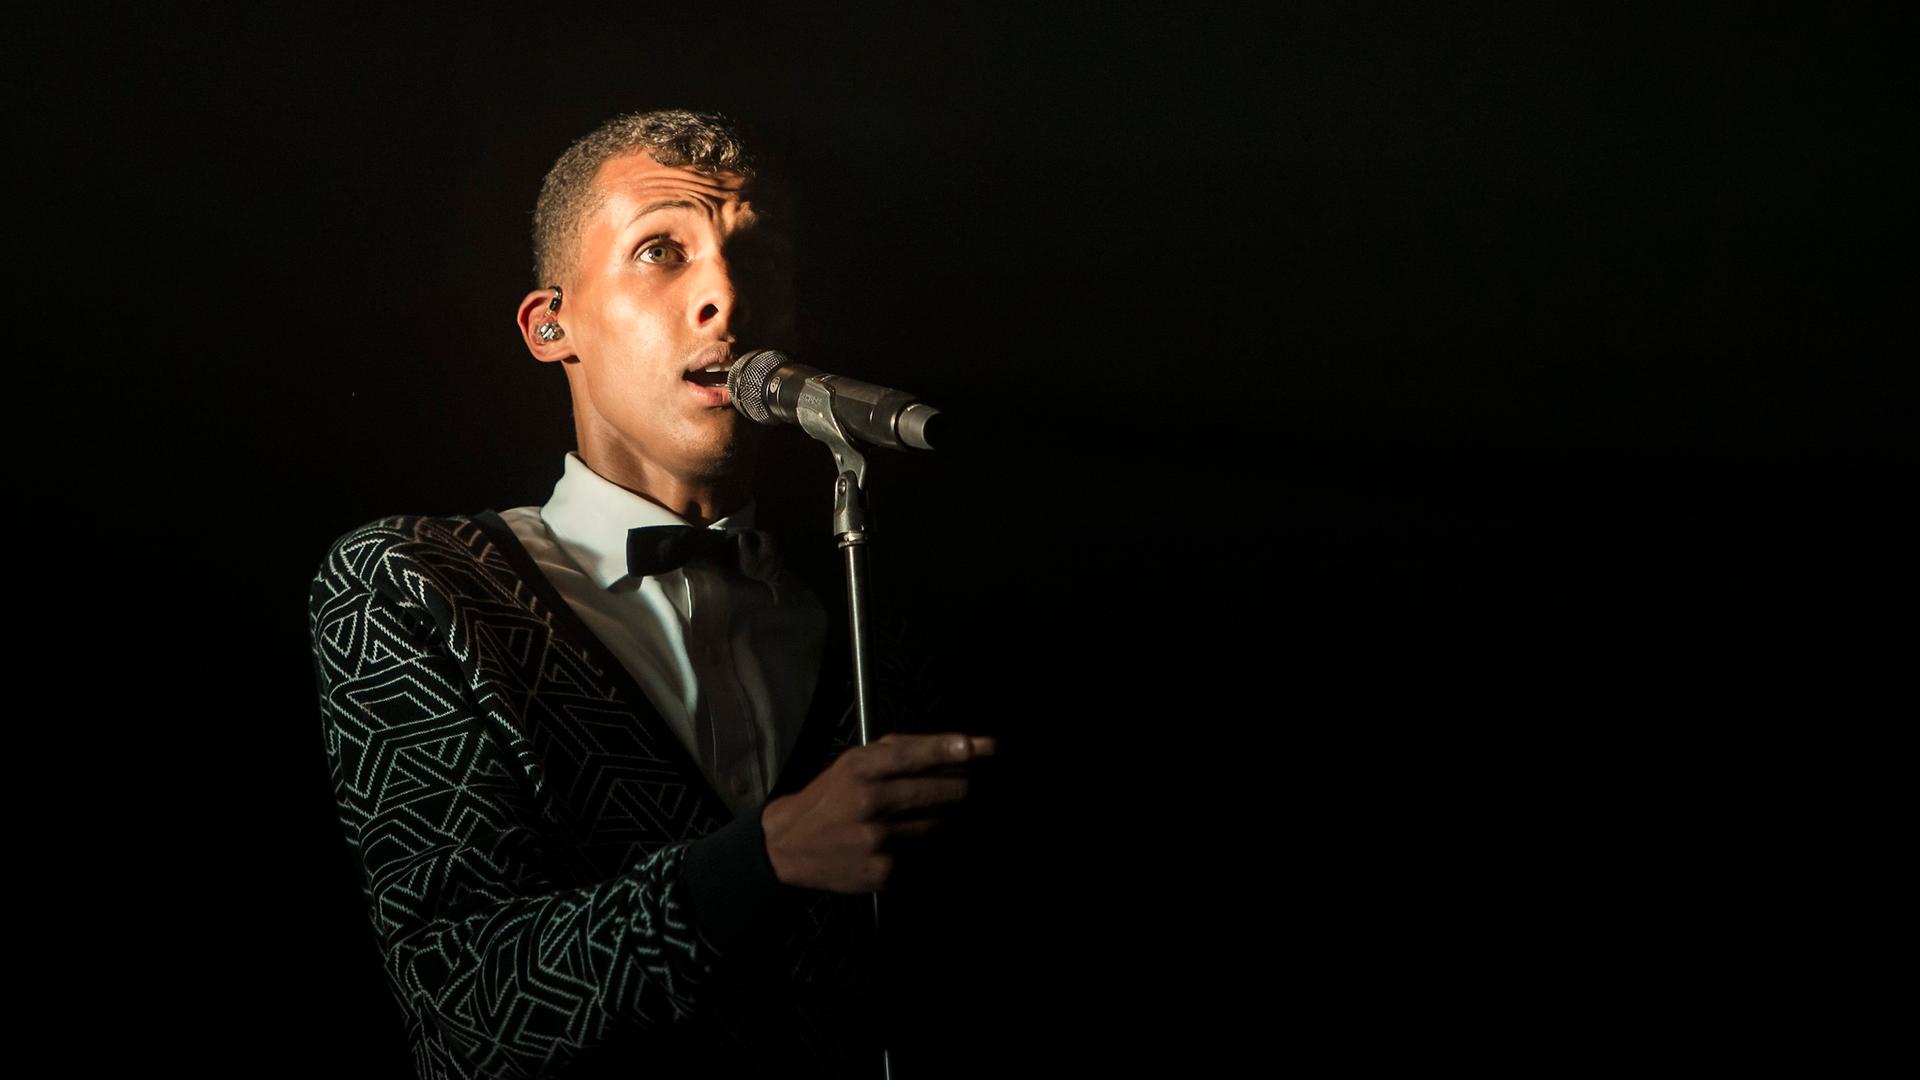 Der Sänger Stromae bei einem Konzert 2014: Er steht vor einem Mikro, der Hintergrund ist schwarz.